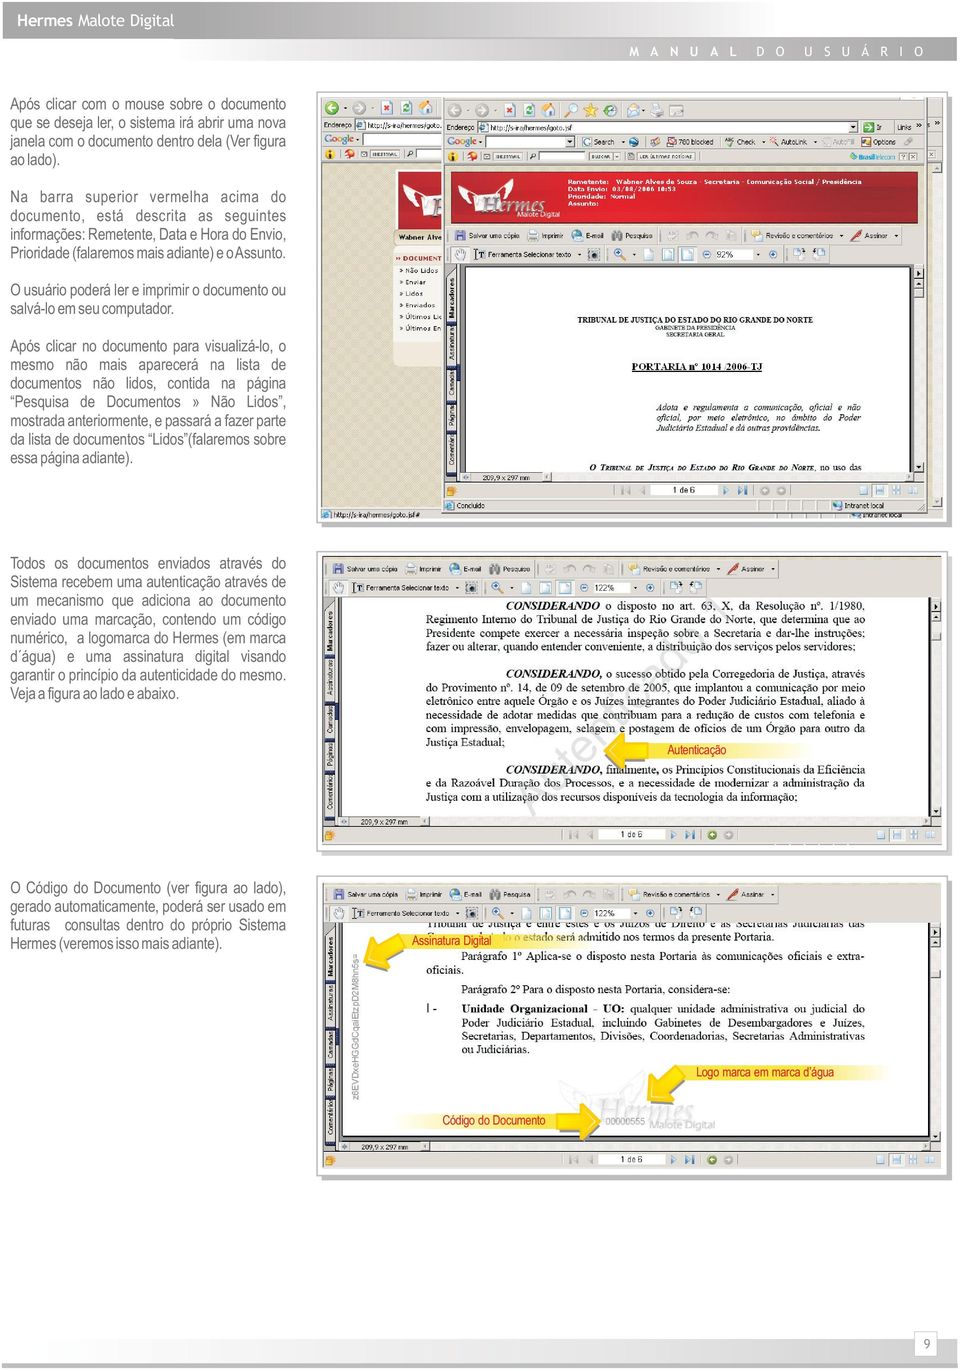 O usuário poderá ler e imprimir o documento ou salvá-lo em seu computador.